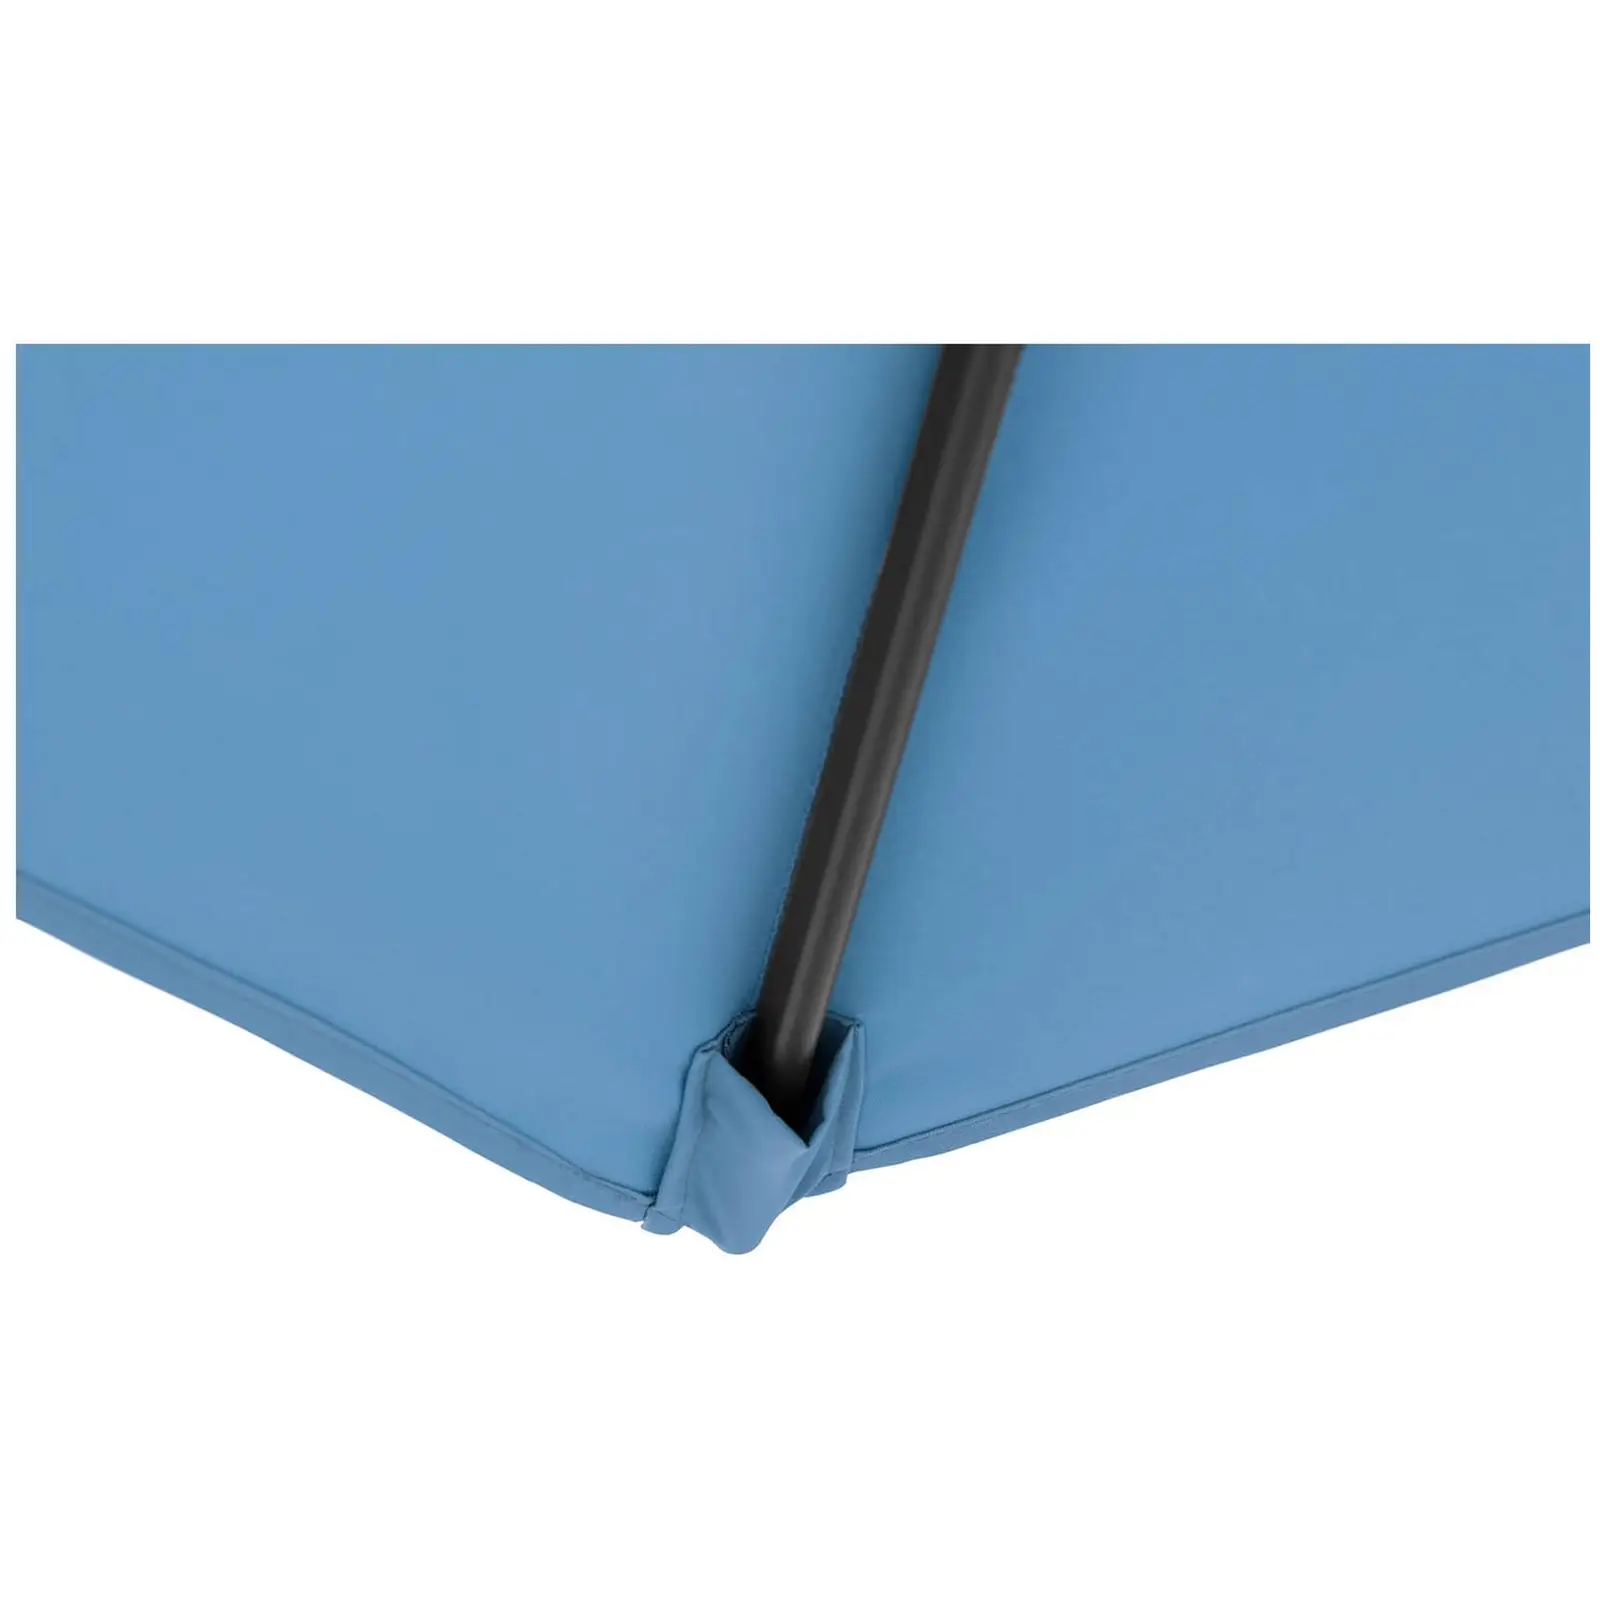 Hængeparasol - blå - firkantet - 250 cm i diameter - drejelig